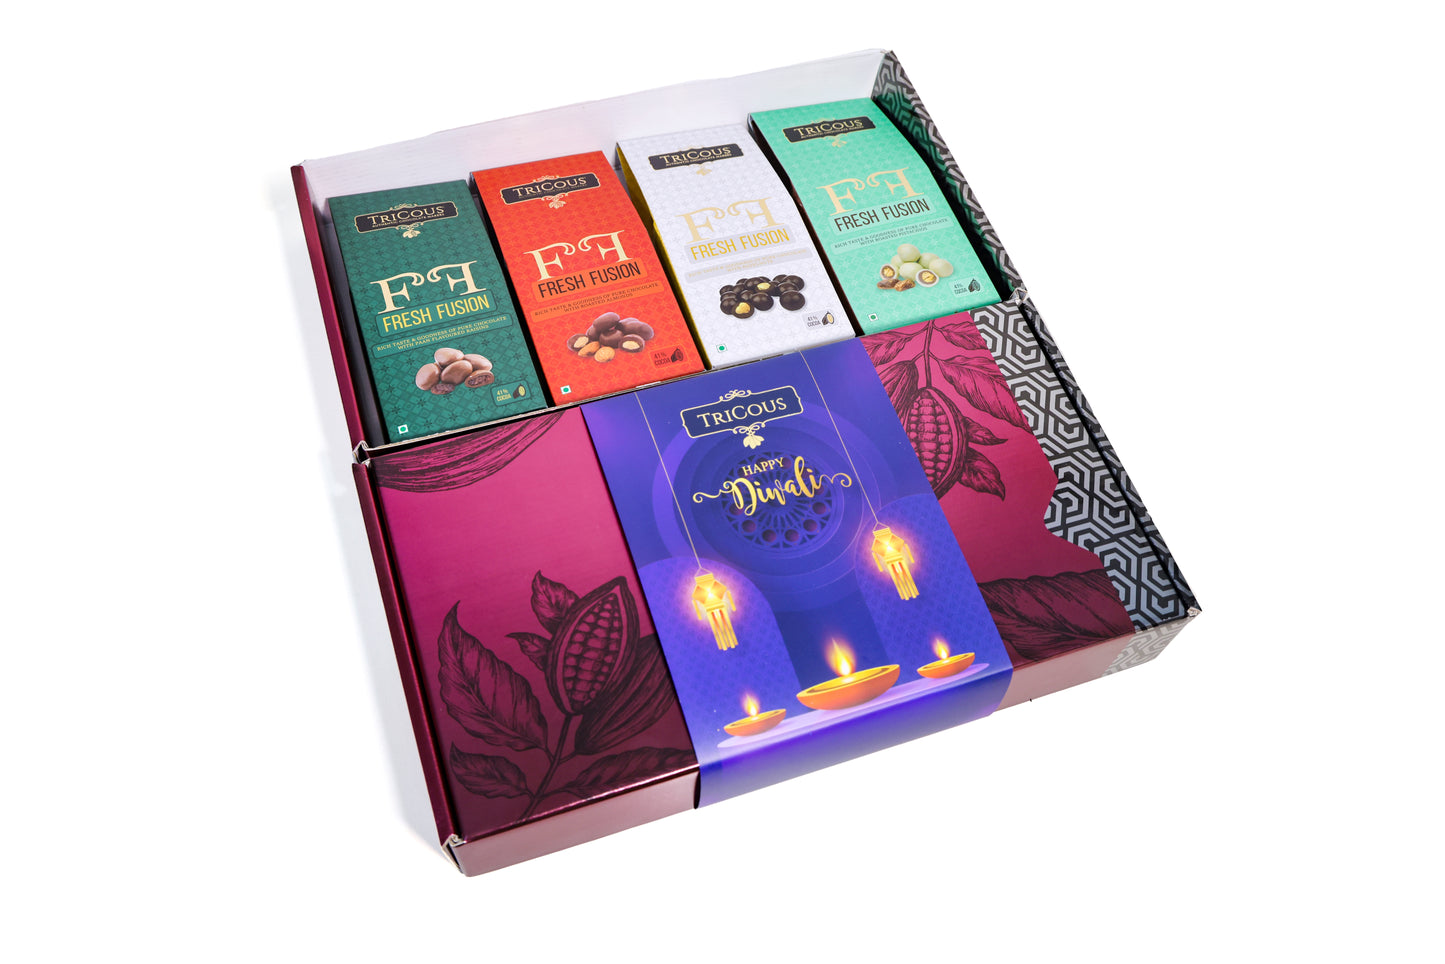 Chocolate Treasure Box